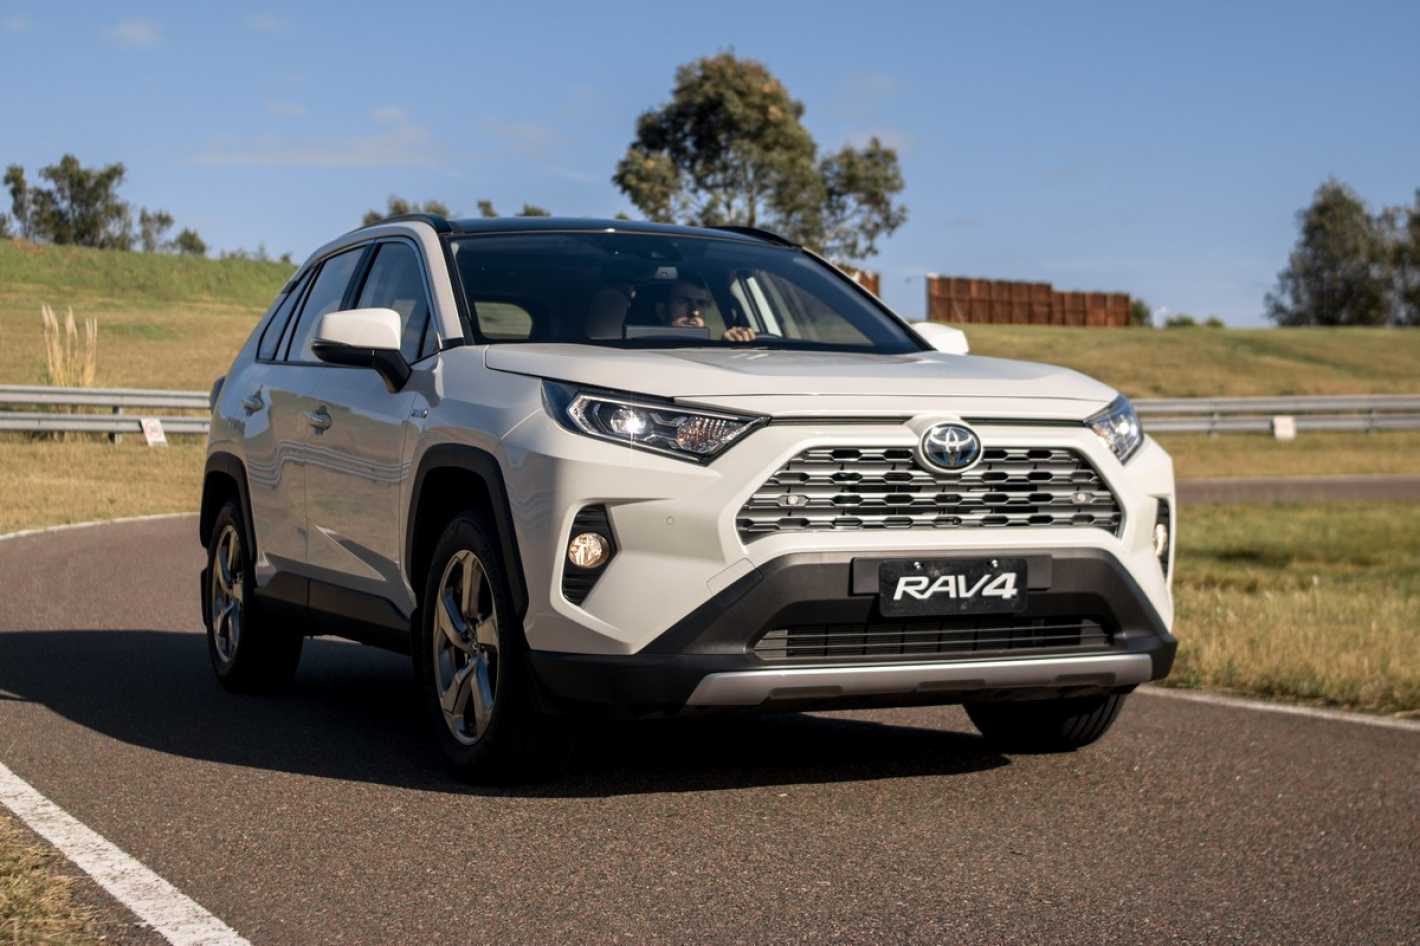 La Rav4 híbrida de Toyota ya se vende en Argentina Mendoza Post